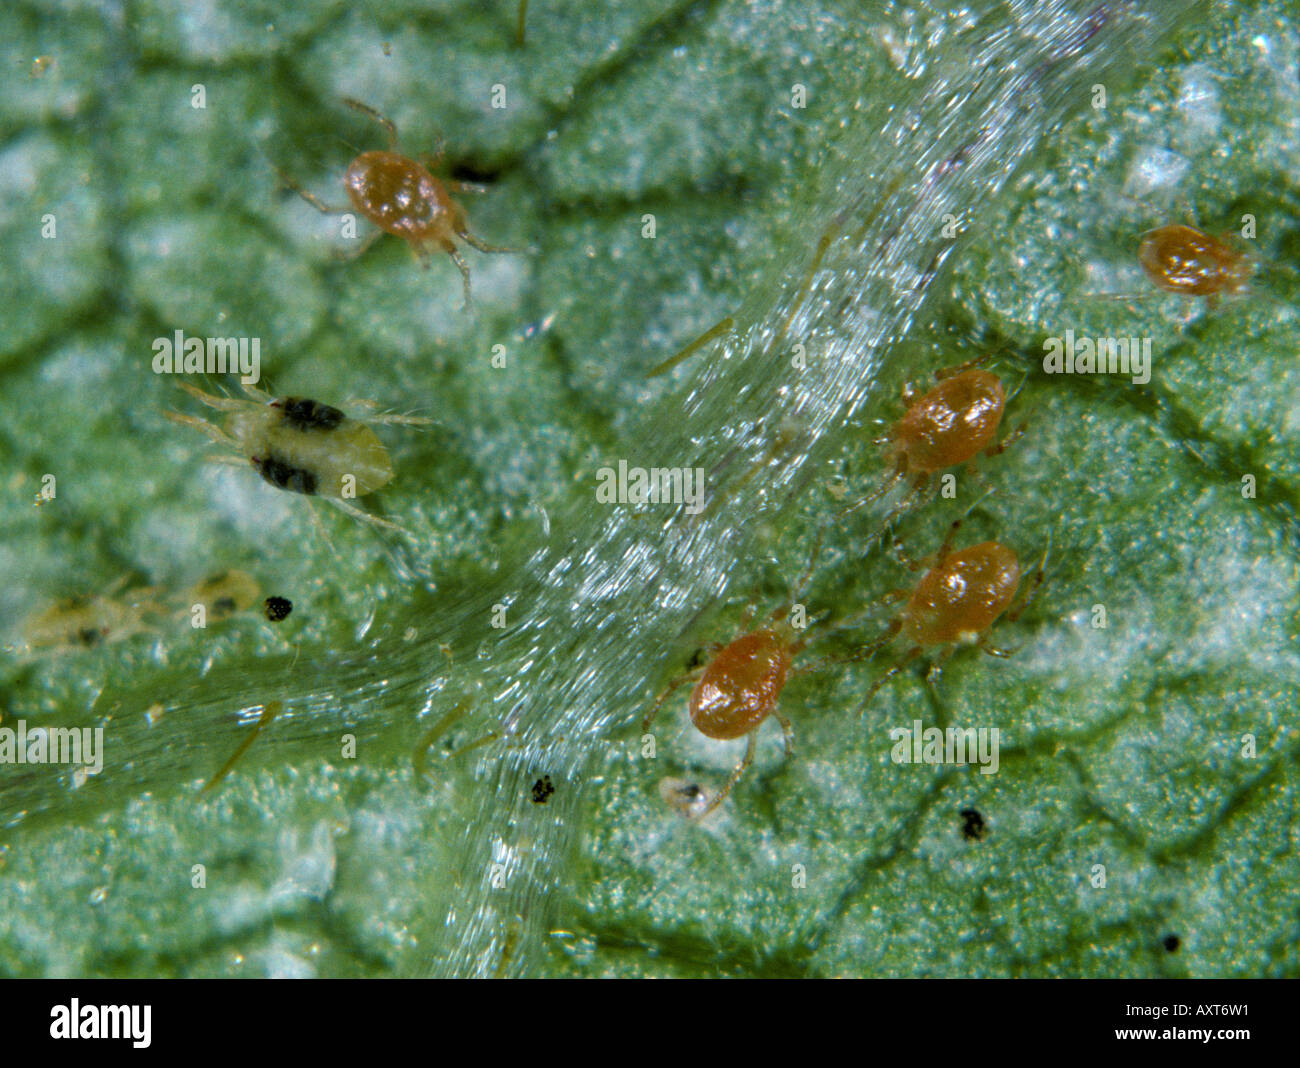 Des acariens prédateurs Phytoseiulus persimilis sur une feuille avec les acariens proies Banque D'Images